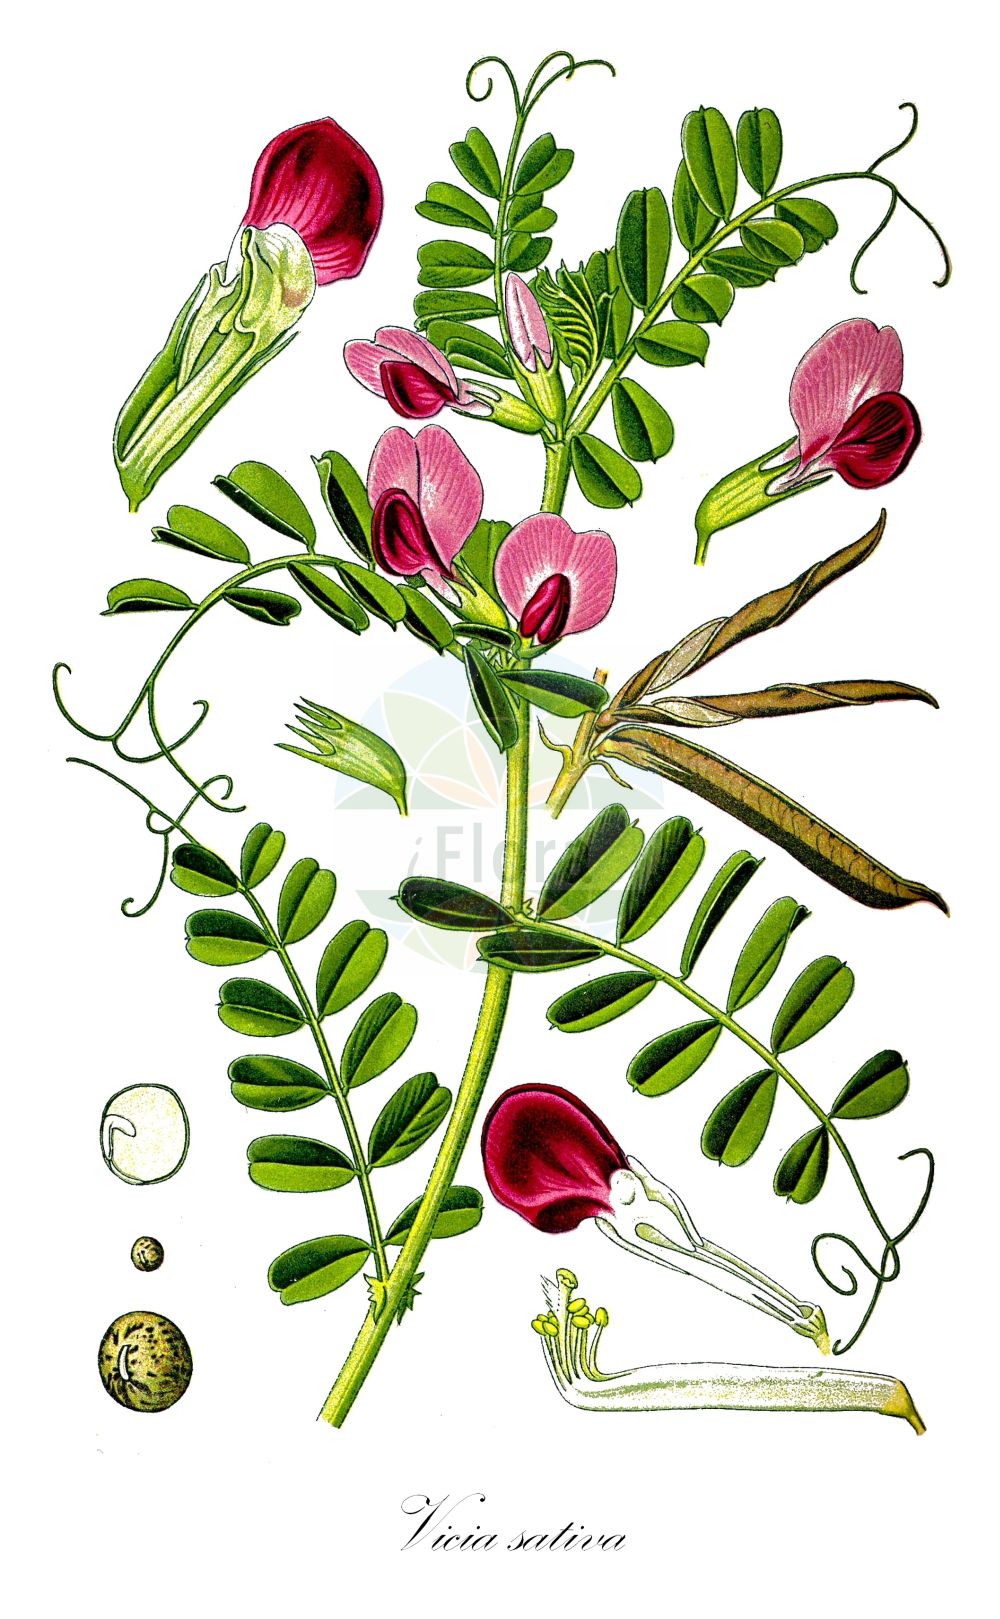 Historische Abbildung von Vicia sativa (Saatwicke - Common Vetch). ---- Historical Drawing of Vicia sativa (Saatwicke - Common Vetch).(Vicia sativa,Saatwicke,Common Vetch,Vicia bacla,Vicia communis,Vicia cornigera,Vicia cosentini,Vicia erythosperma,Vicia glabra,Vicia intermedia,Vicia leucosperma,Vicia melanosperma,Vicia morisiana,Vicia nemoralis,Vicia notota,Vicia pallida,Vicia pimpinelloides,Vicia sativa,Vicia terana,Saatwicke,Acker-Saat-Wicke,Acker-Schmalblatt-Wicke,Futterwicke,Futter-Wicke,Saat-Wicke,Common Vetch,Broad-leaved Purple Vetch,Garden Vetch,Summer Vetch,Vicia,Wicke,Vetch,Fabaceae,Schmetterlingsblütler,Pea family,Thomé (1885))